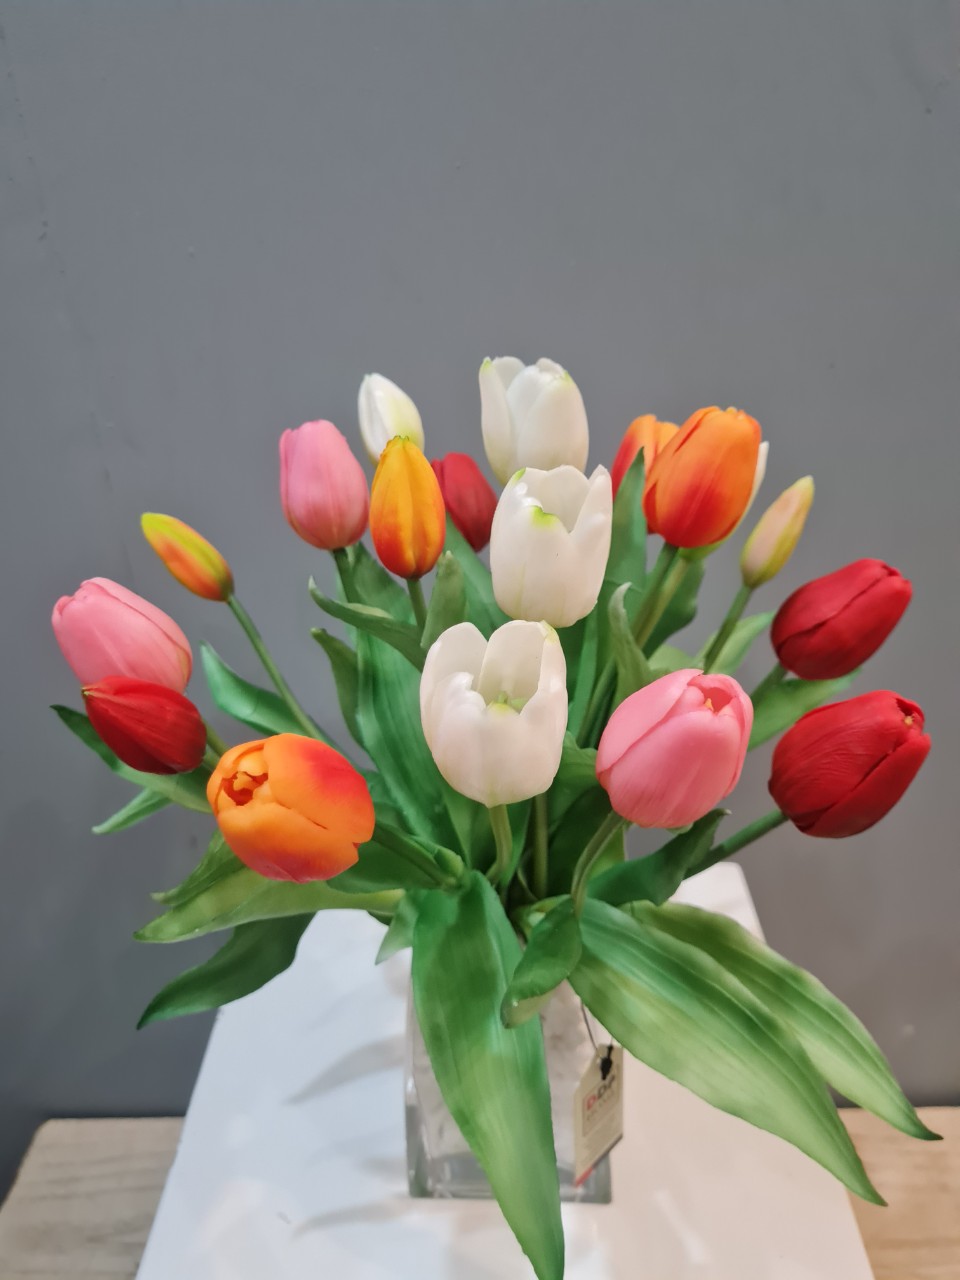 bình hoa tulip vải nhiều màu quà tặng 20-11 